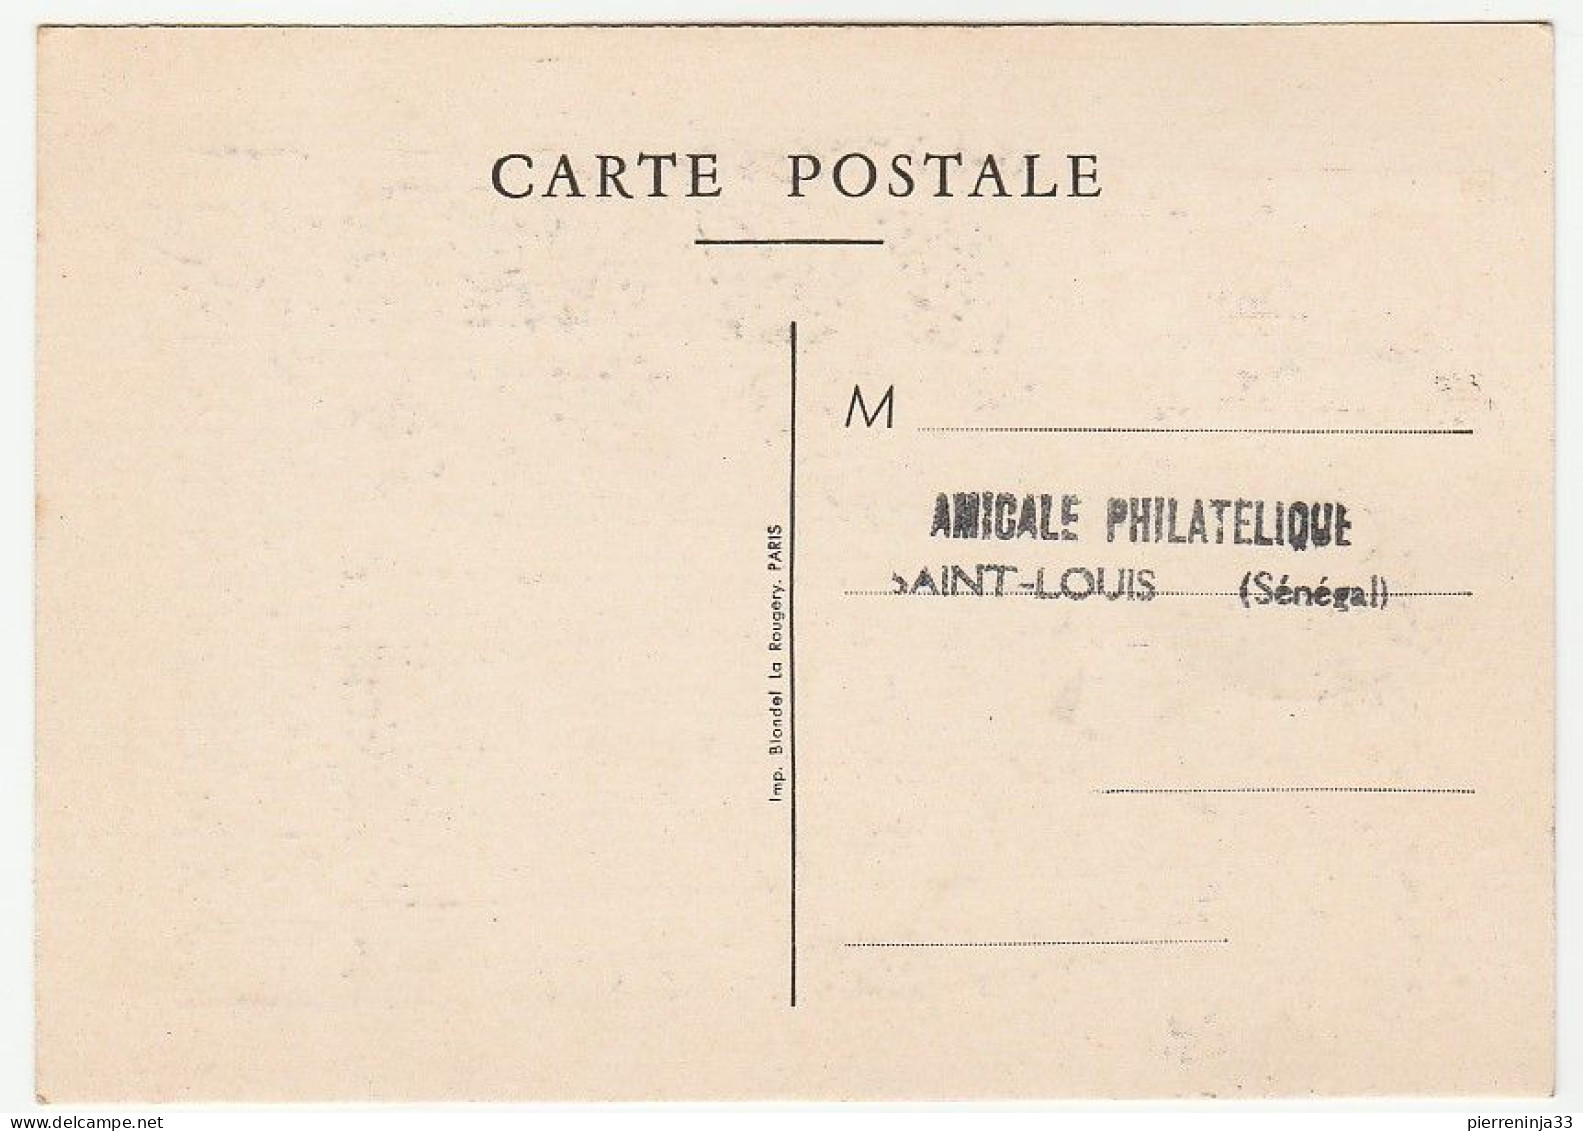 Carte Journée Du Timbre 1950,  St Louis Du Sénégal - Storia Postale